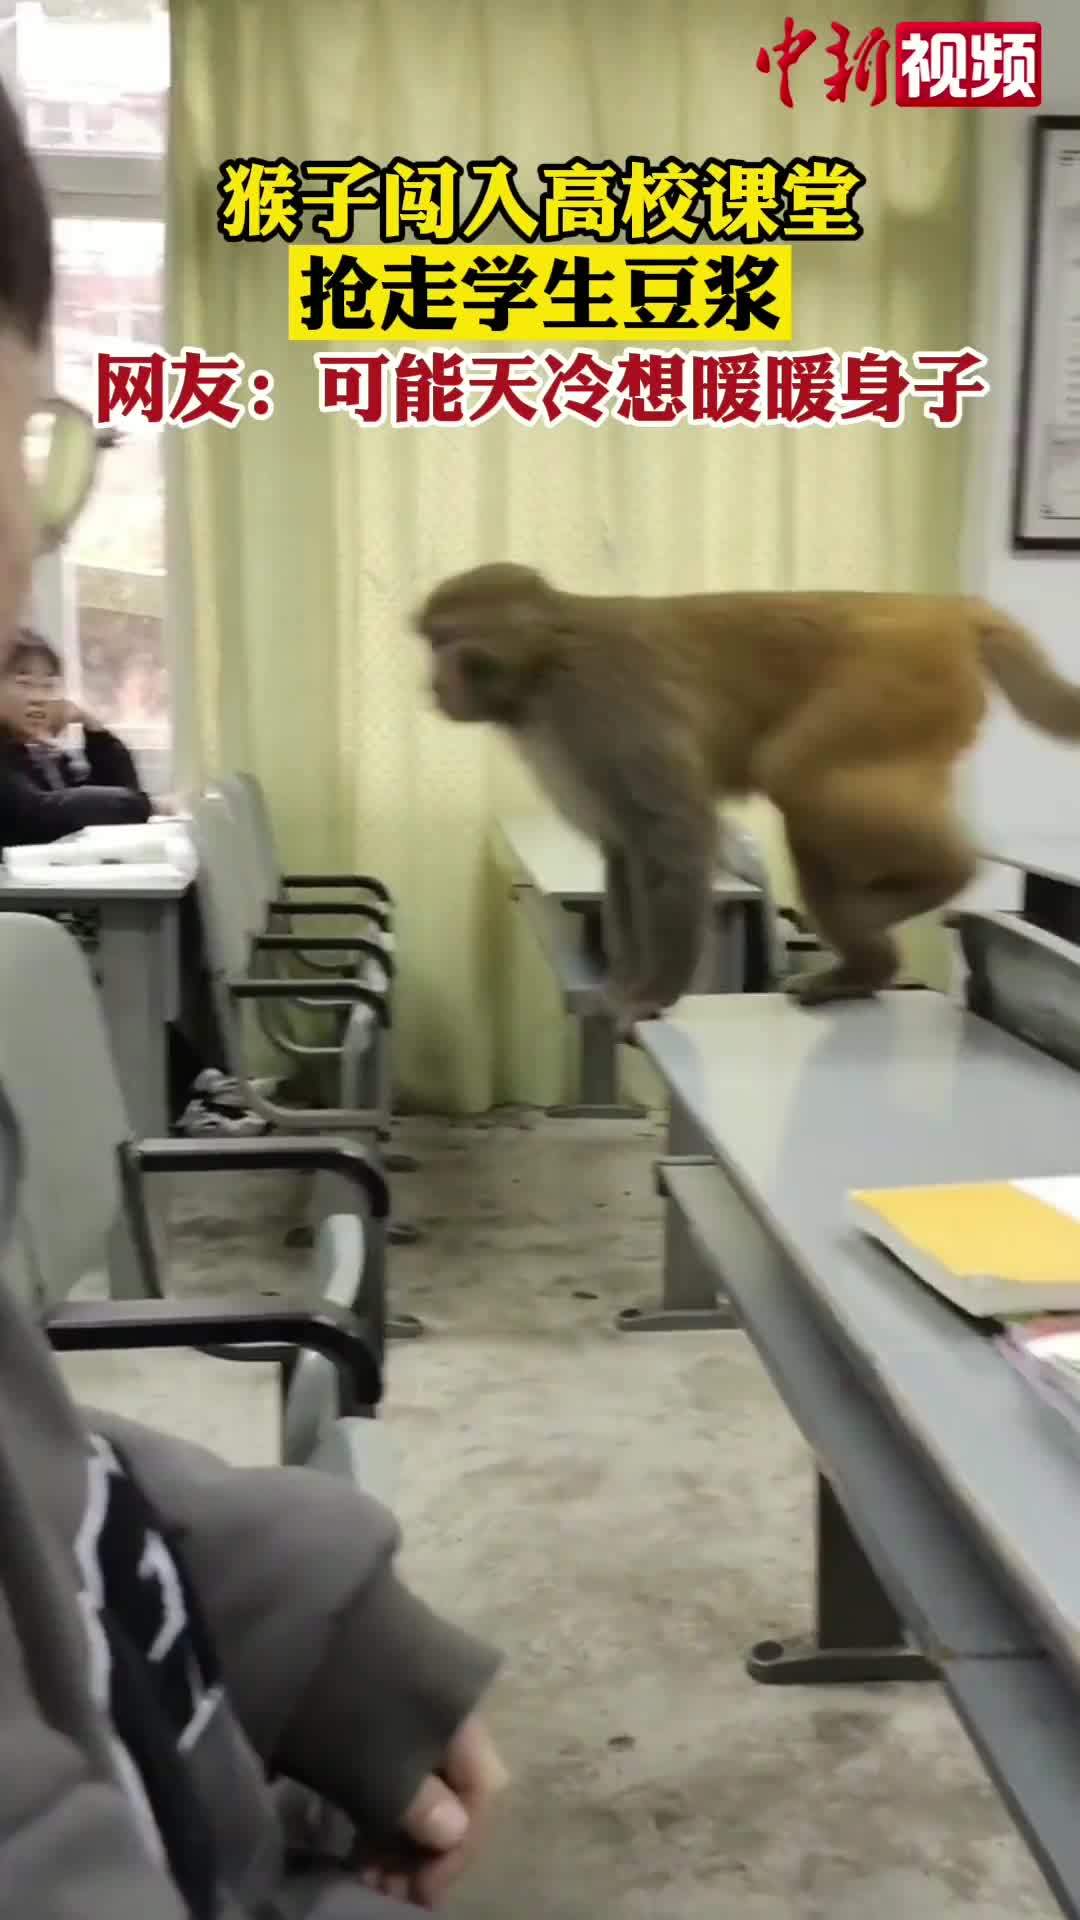 猴子闯入高校课堂抢走学生豆浆